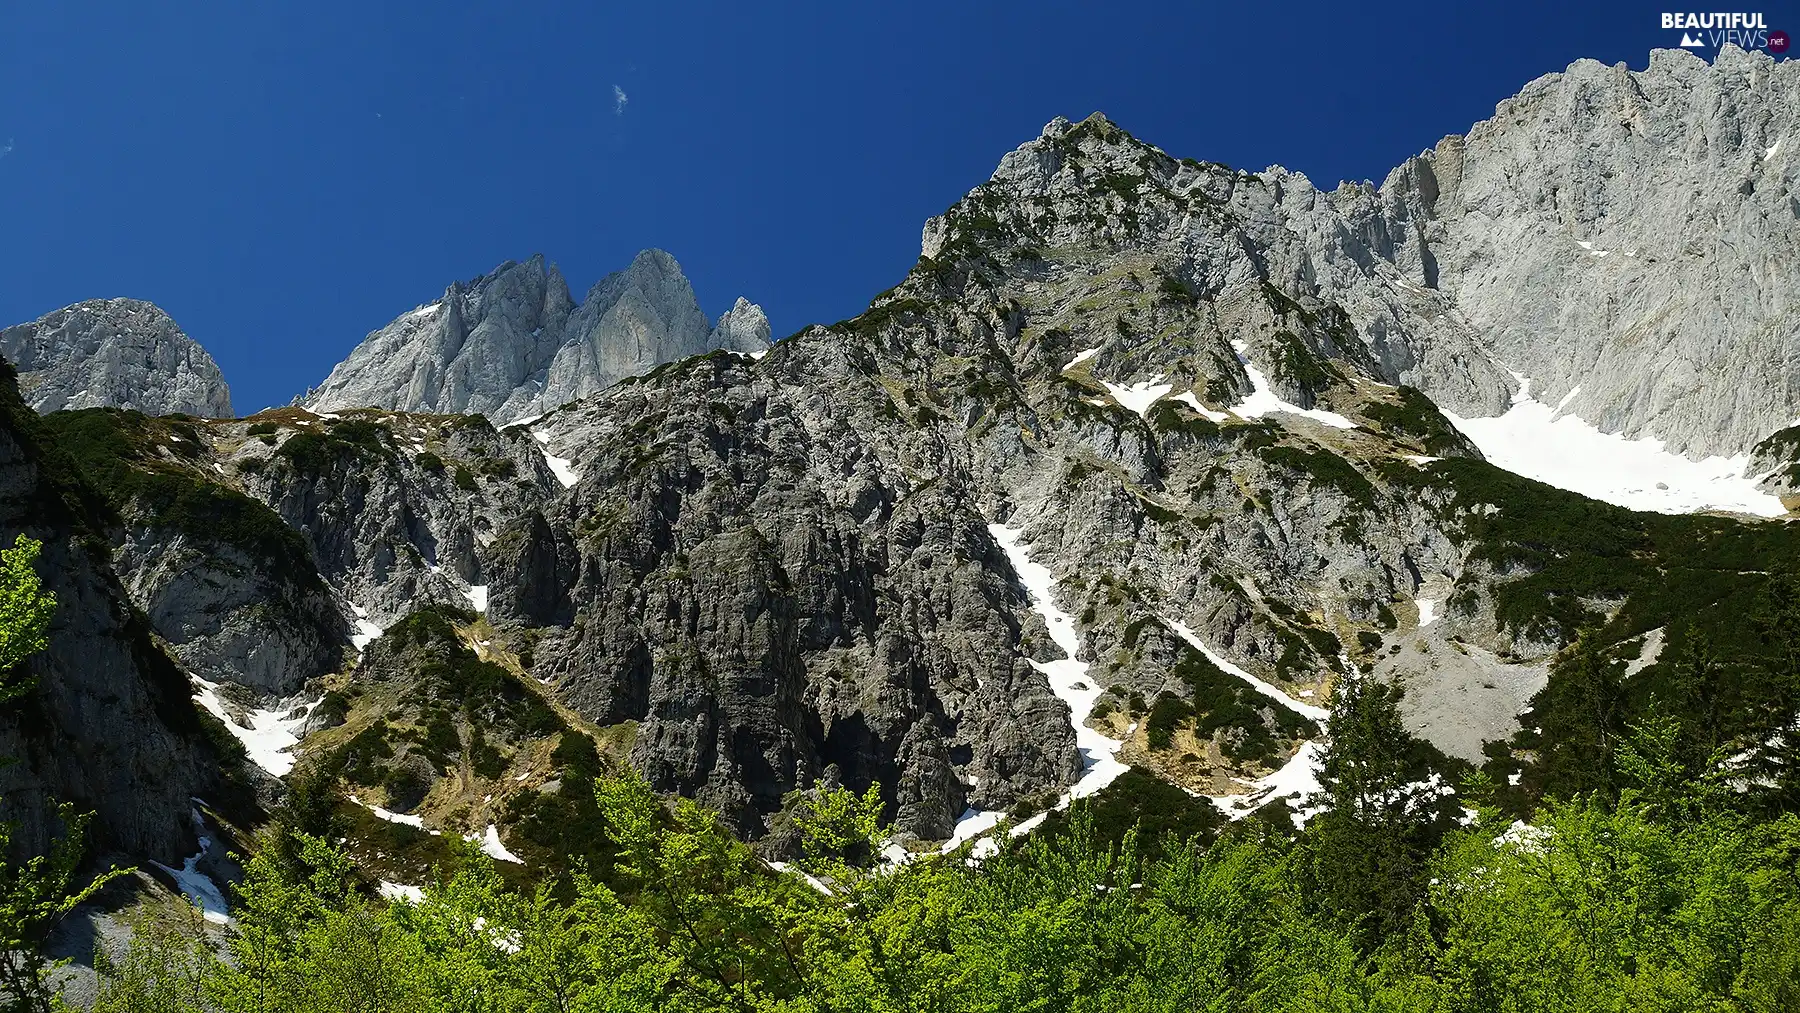 Mountains, Alps